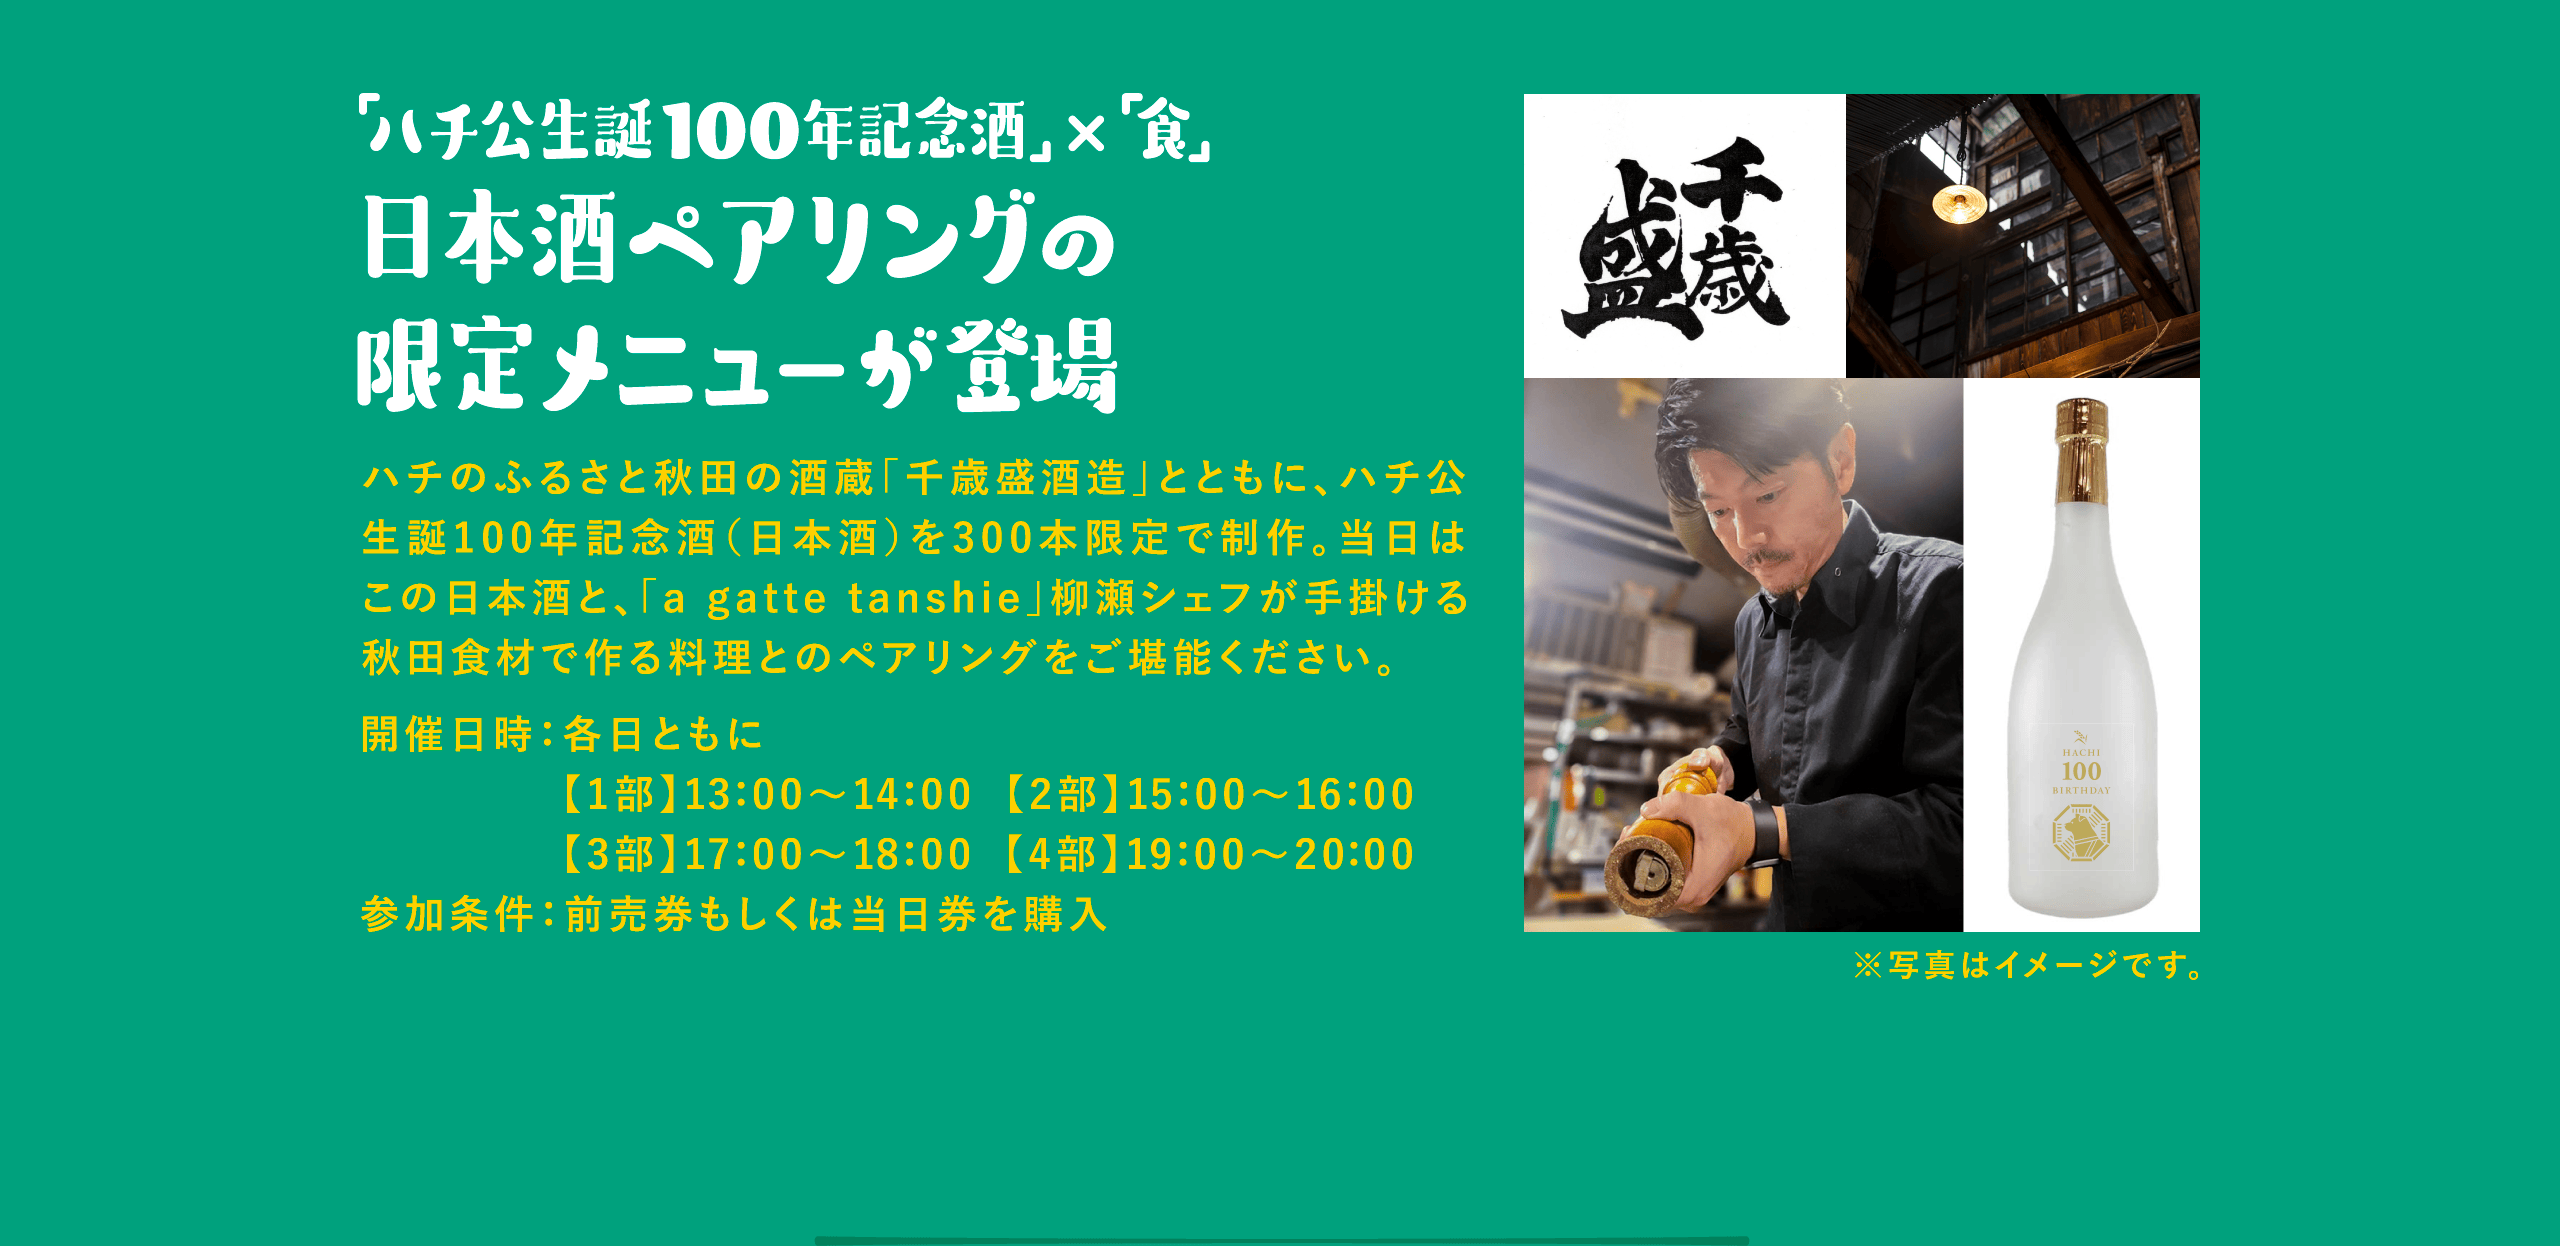 「ハチ公生誕100年記念酒」×「食」日本酒ペアリングの限定メニューが登場 ハチのふるさと秋田の酒蔵「千歳盛酒造」とともに、ハチ公生誕100年記念酒（日本酒）を300本限定で制作。当日はこの日本酒と、「a gatte tanshie」柳瀬シェフが手掛ける秋田食材で作る料理とのペアリングをご堪能ください。